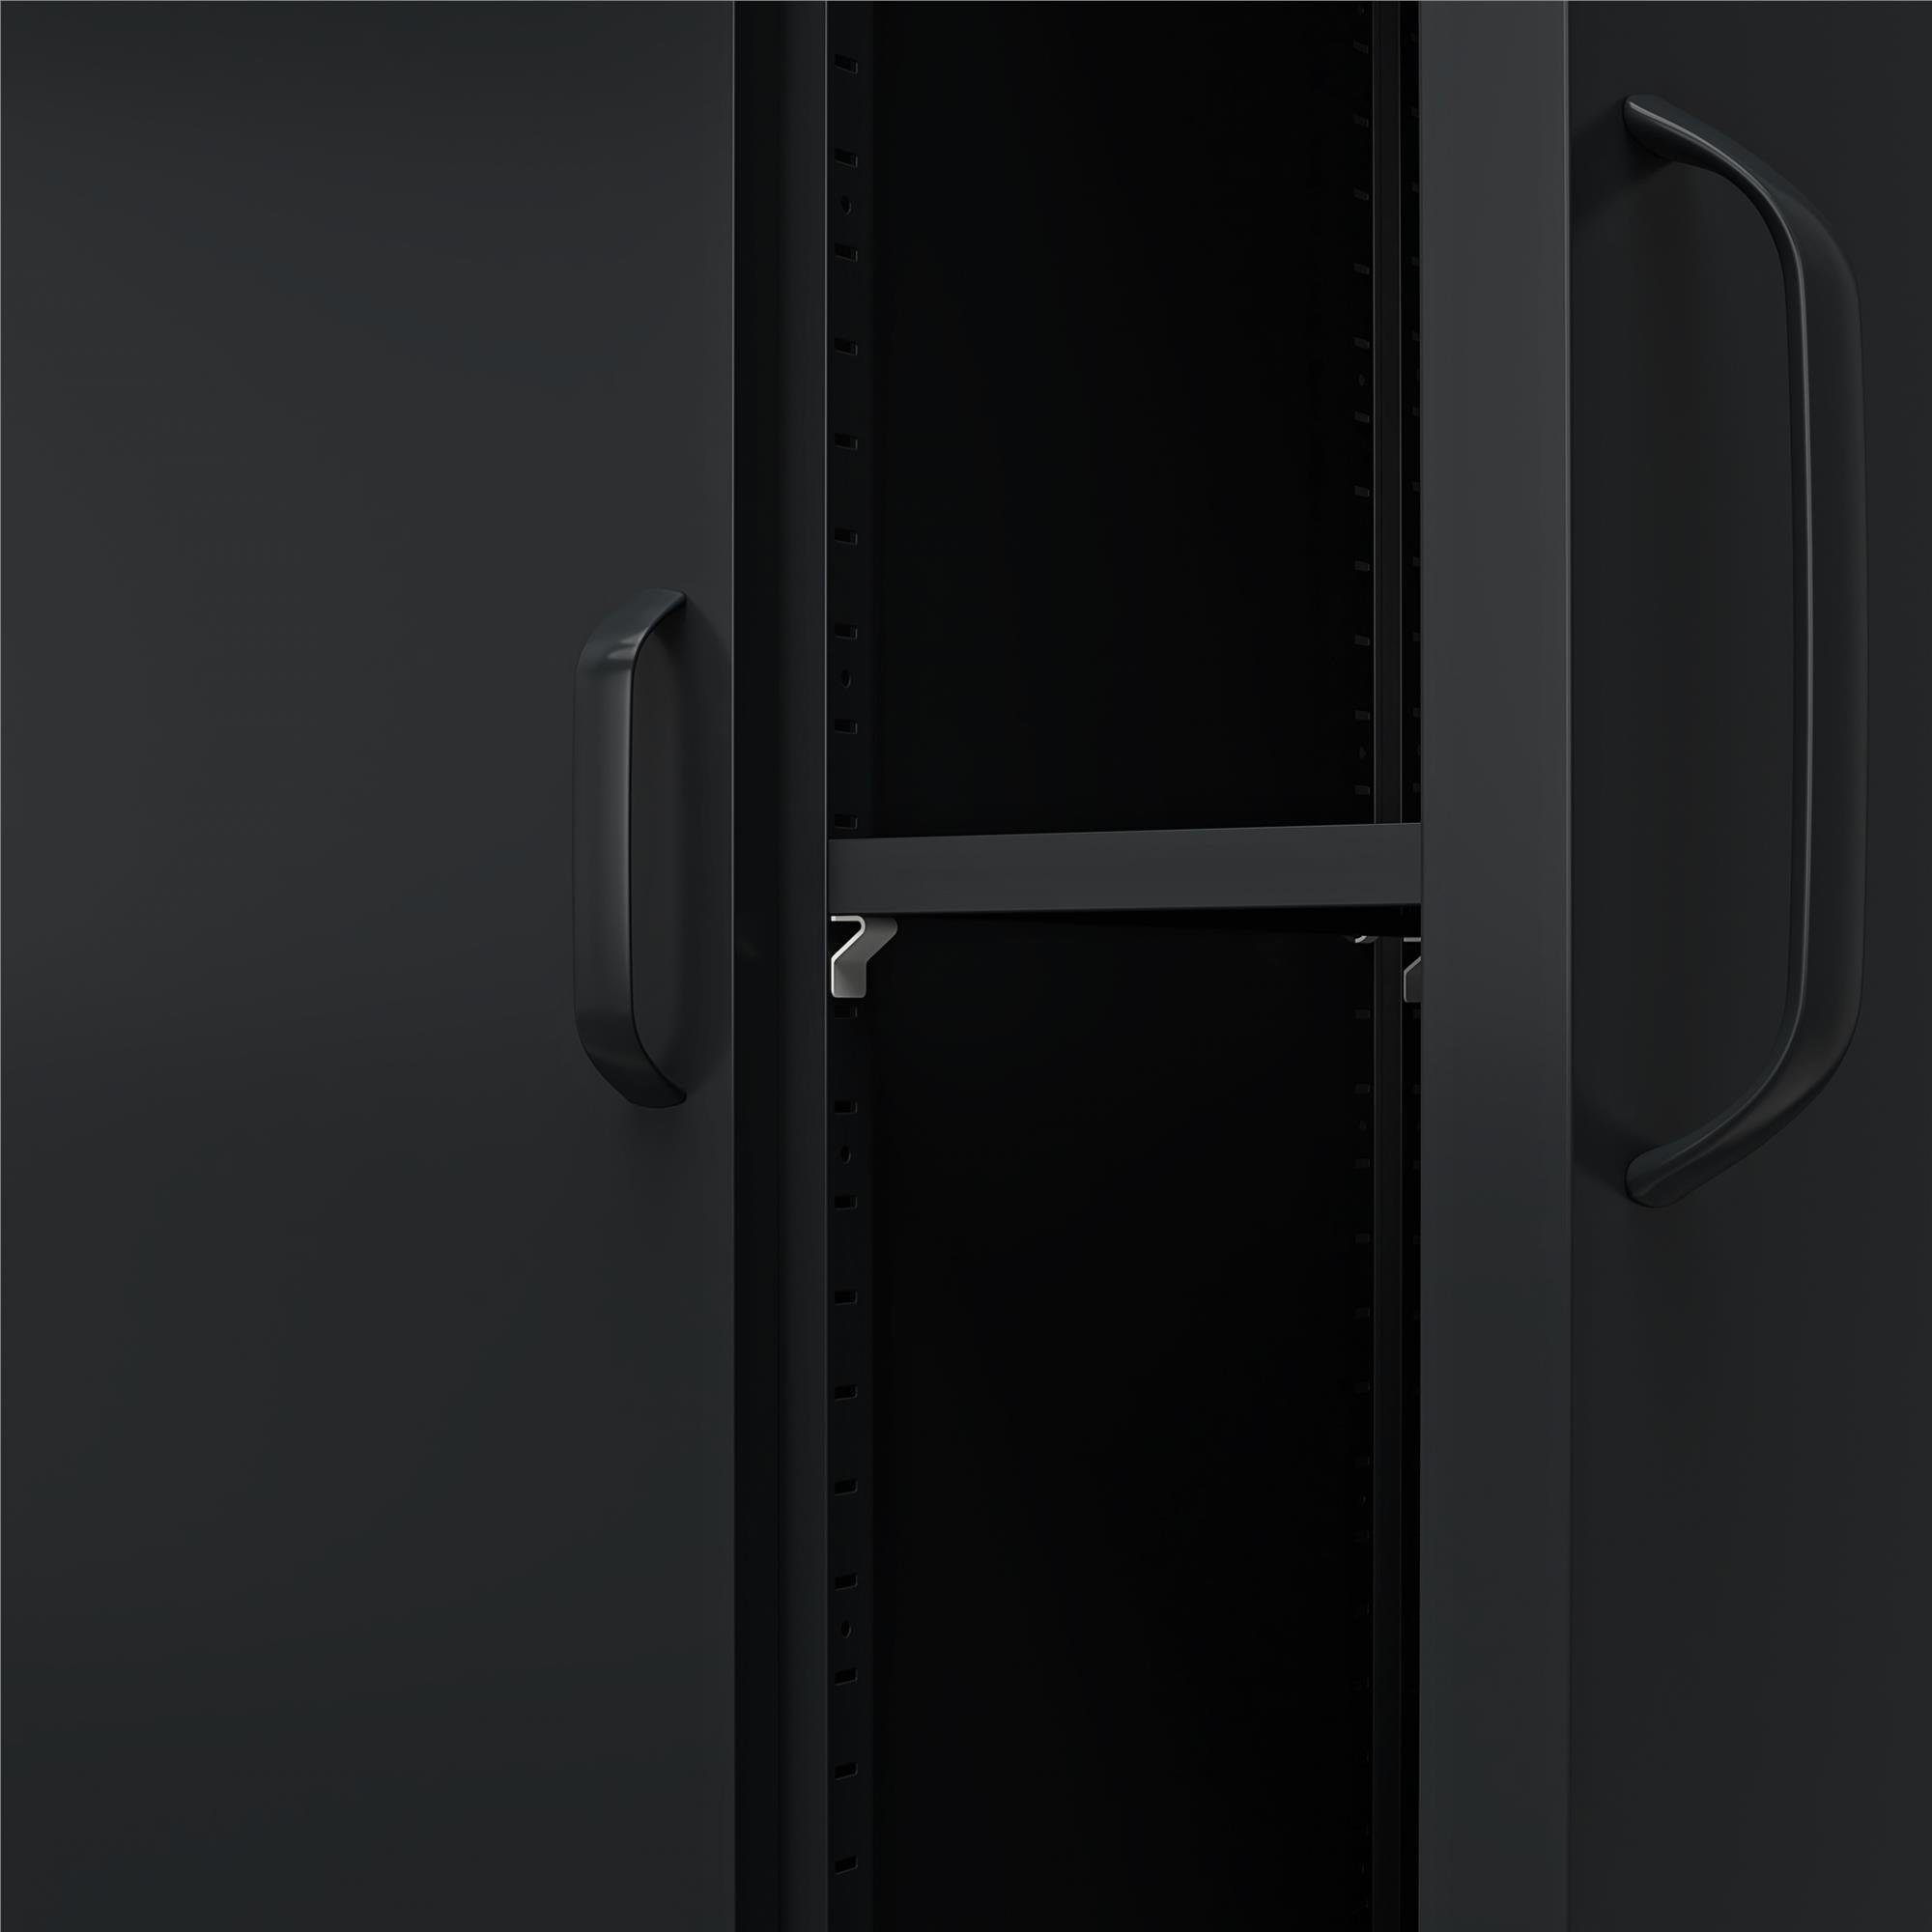 loft24 Spind Mission District Metallschrank, Mehrzweckschrank, schwarz Türen, 185 Höhe 2 cm